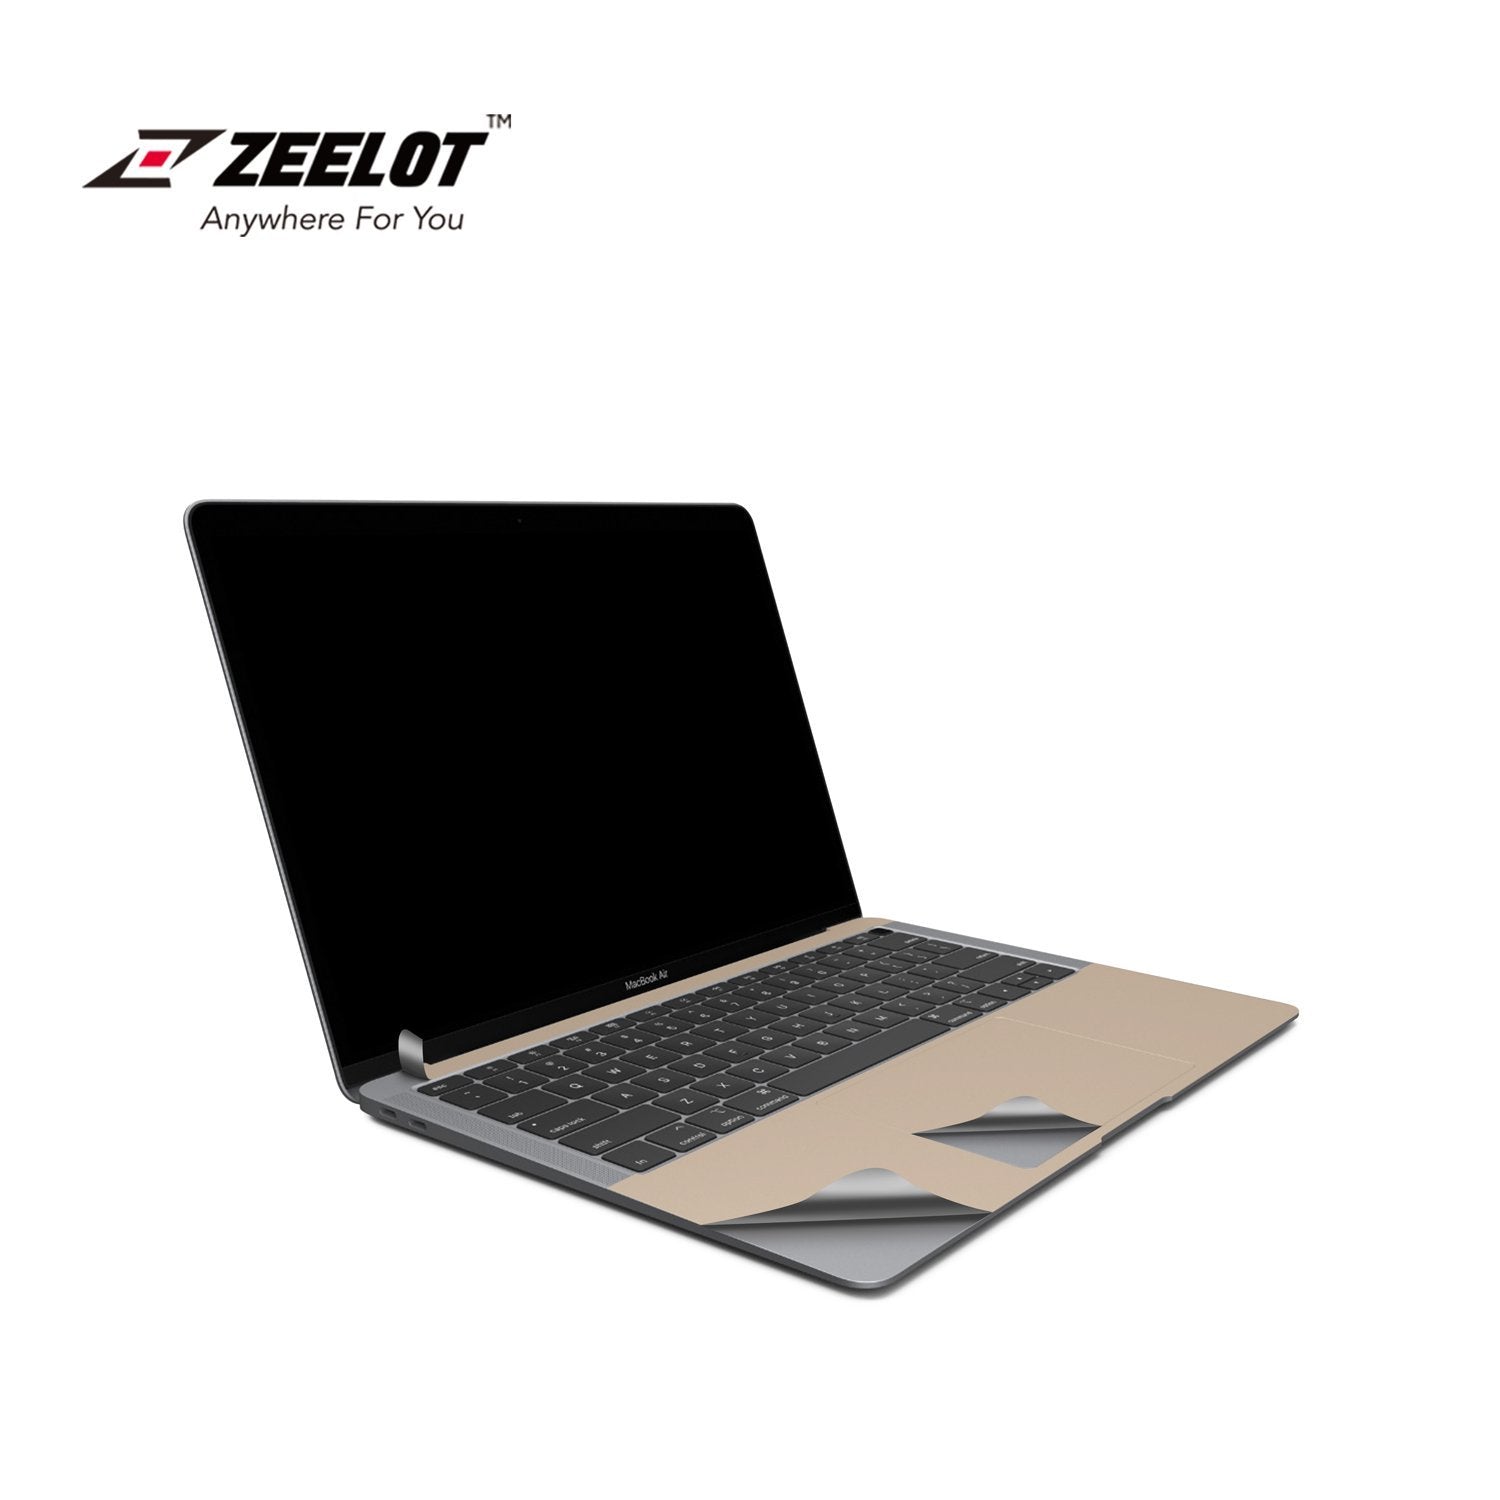 ZEELOT 6 in 1 Full Body Guard for MacBook Air 13"(2020), Gold Default Zeelot 